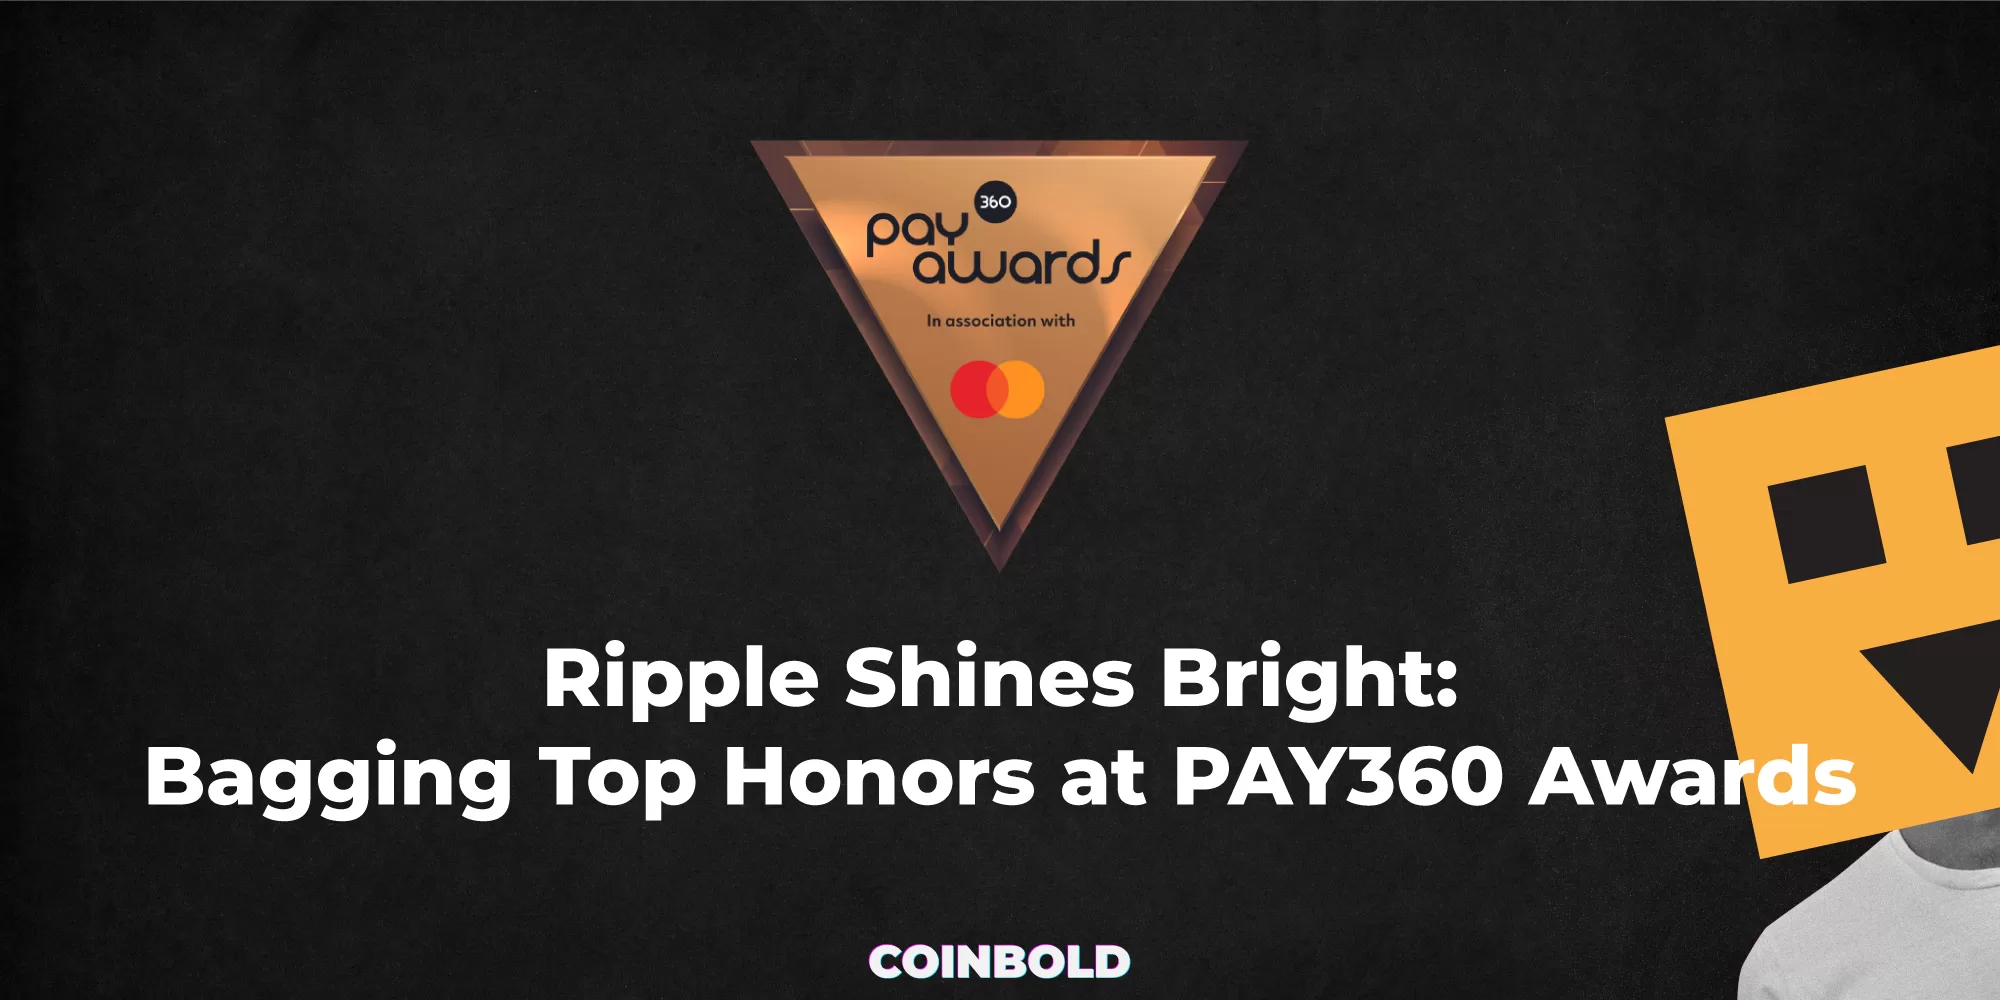 Ripple Shines Bright Bagging Top Honors at PAY360 Awards